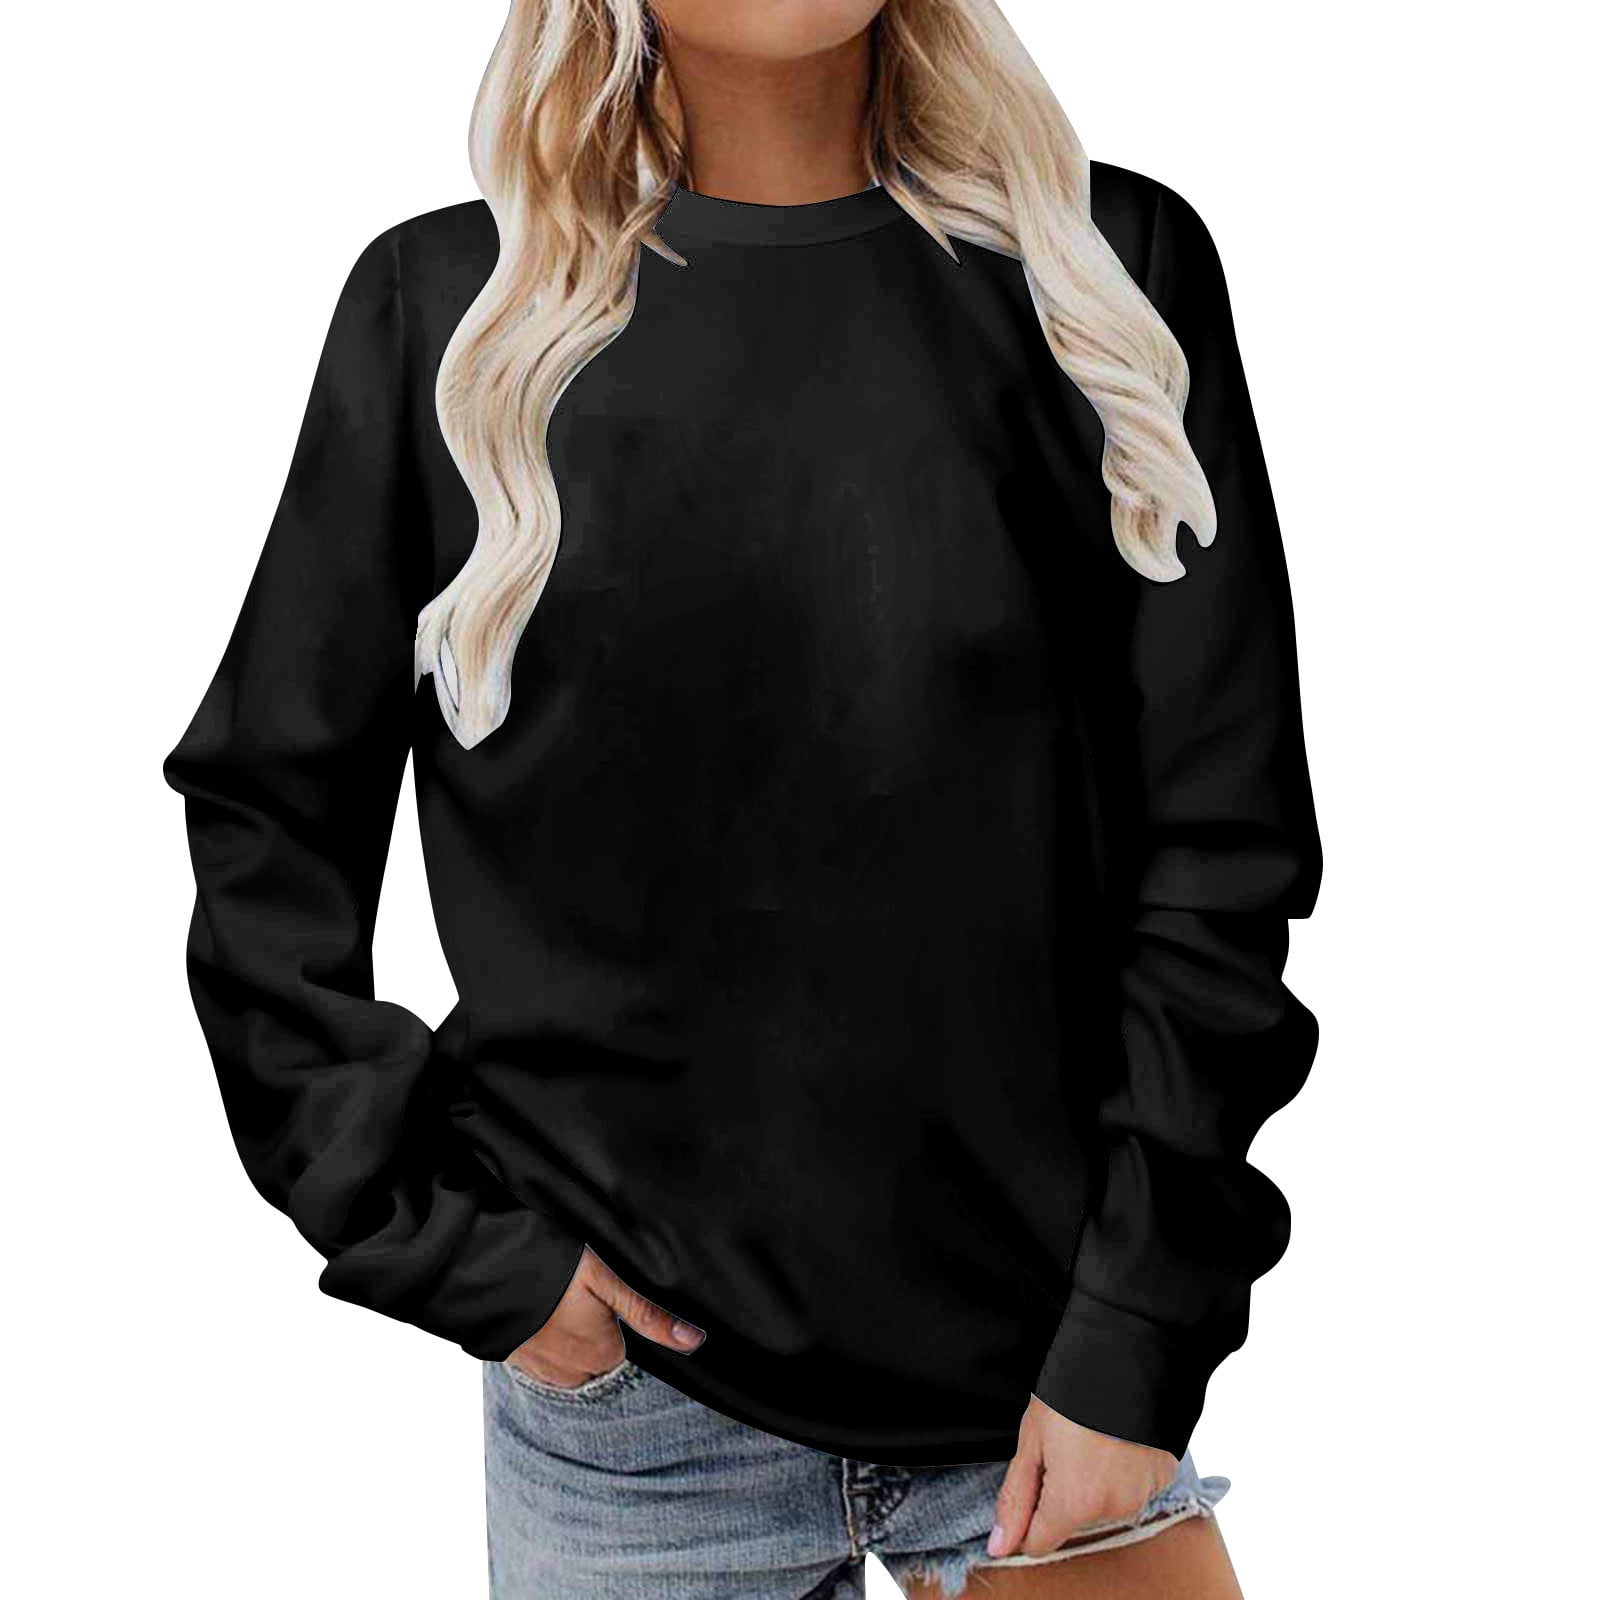 Vintage Sweatshirt Women Long Sleeve Crewneck Fall Casual Pullover Loose  Hoodies Y2K Cute Plus Size Athletic Black Pullover